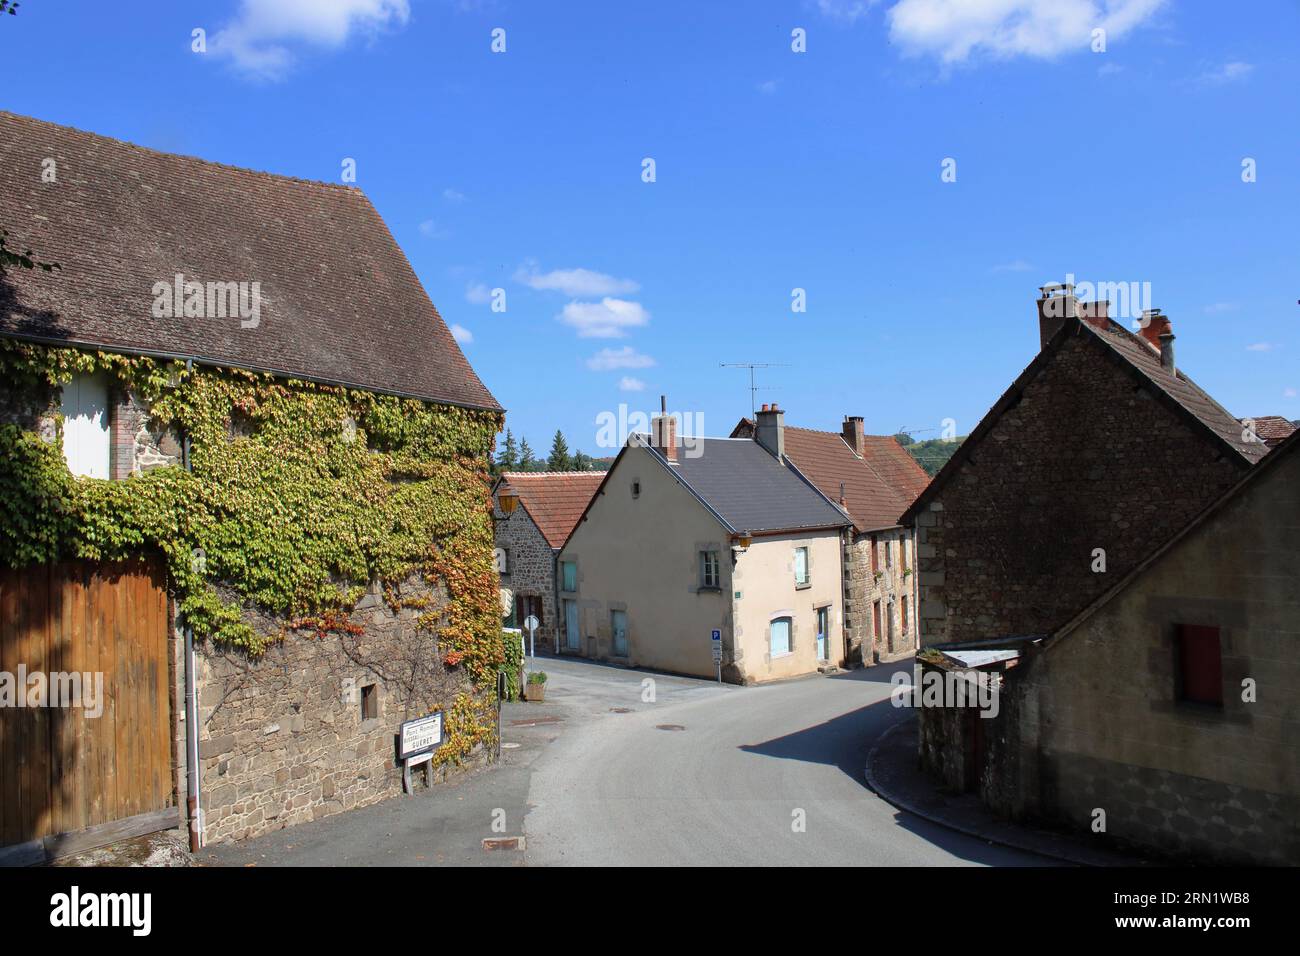 Une vue de la rue principale à travers le village de Moutier d'Ahun célèbre pour son pont romain ici situé dans la région de la Creuse du centre rural de la France. Banque D'Images